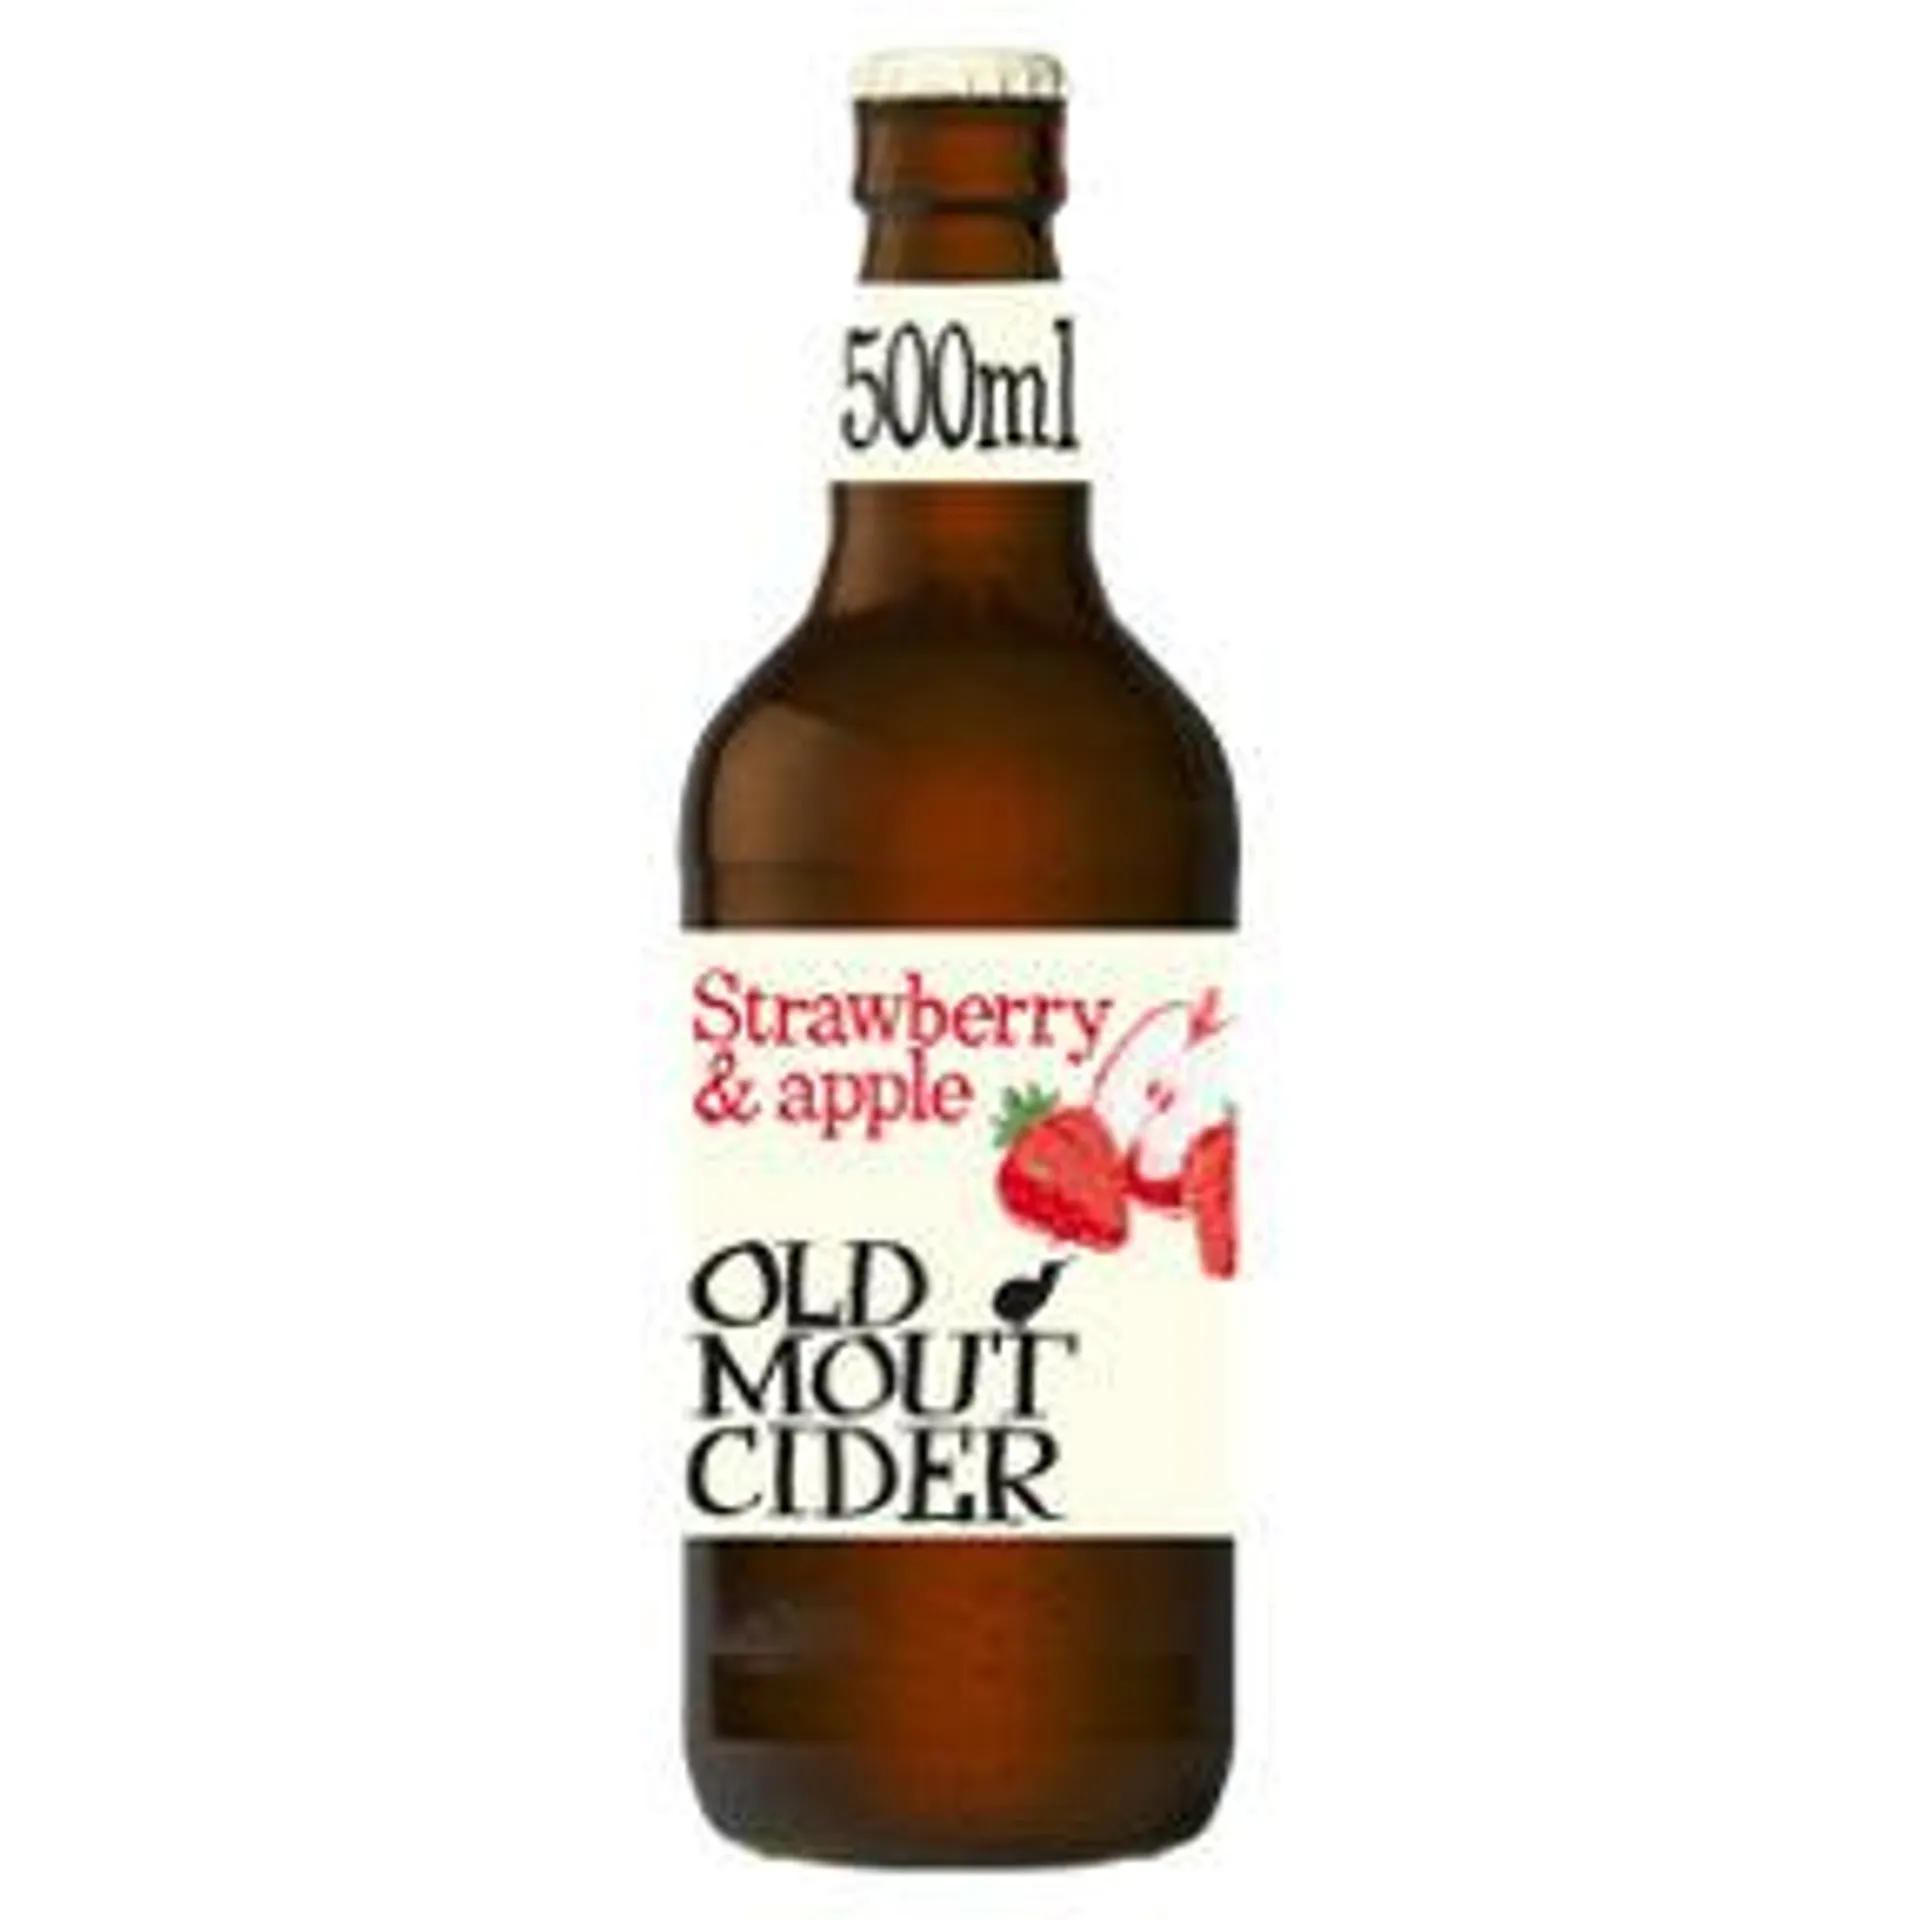 Old Mout Cider Strawberry & Apple Cider Bottle